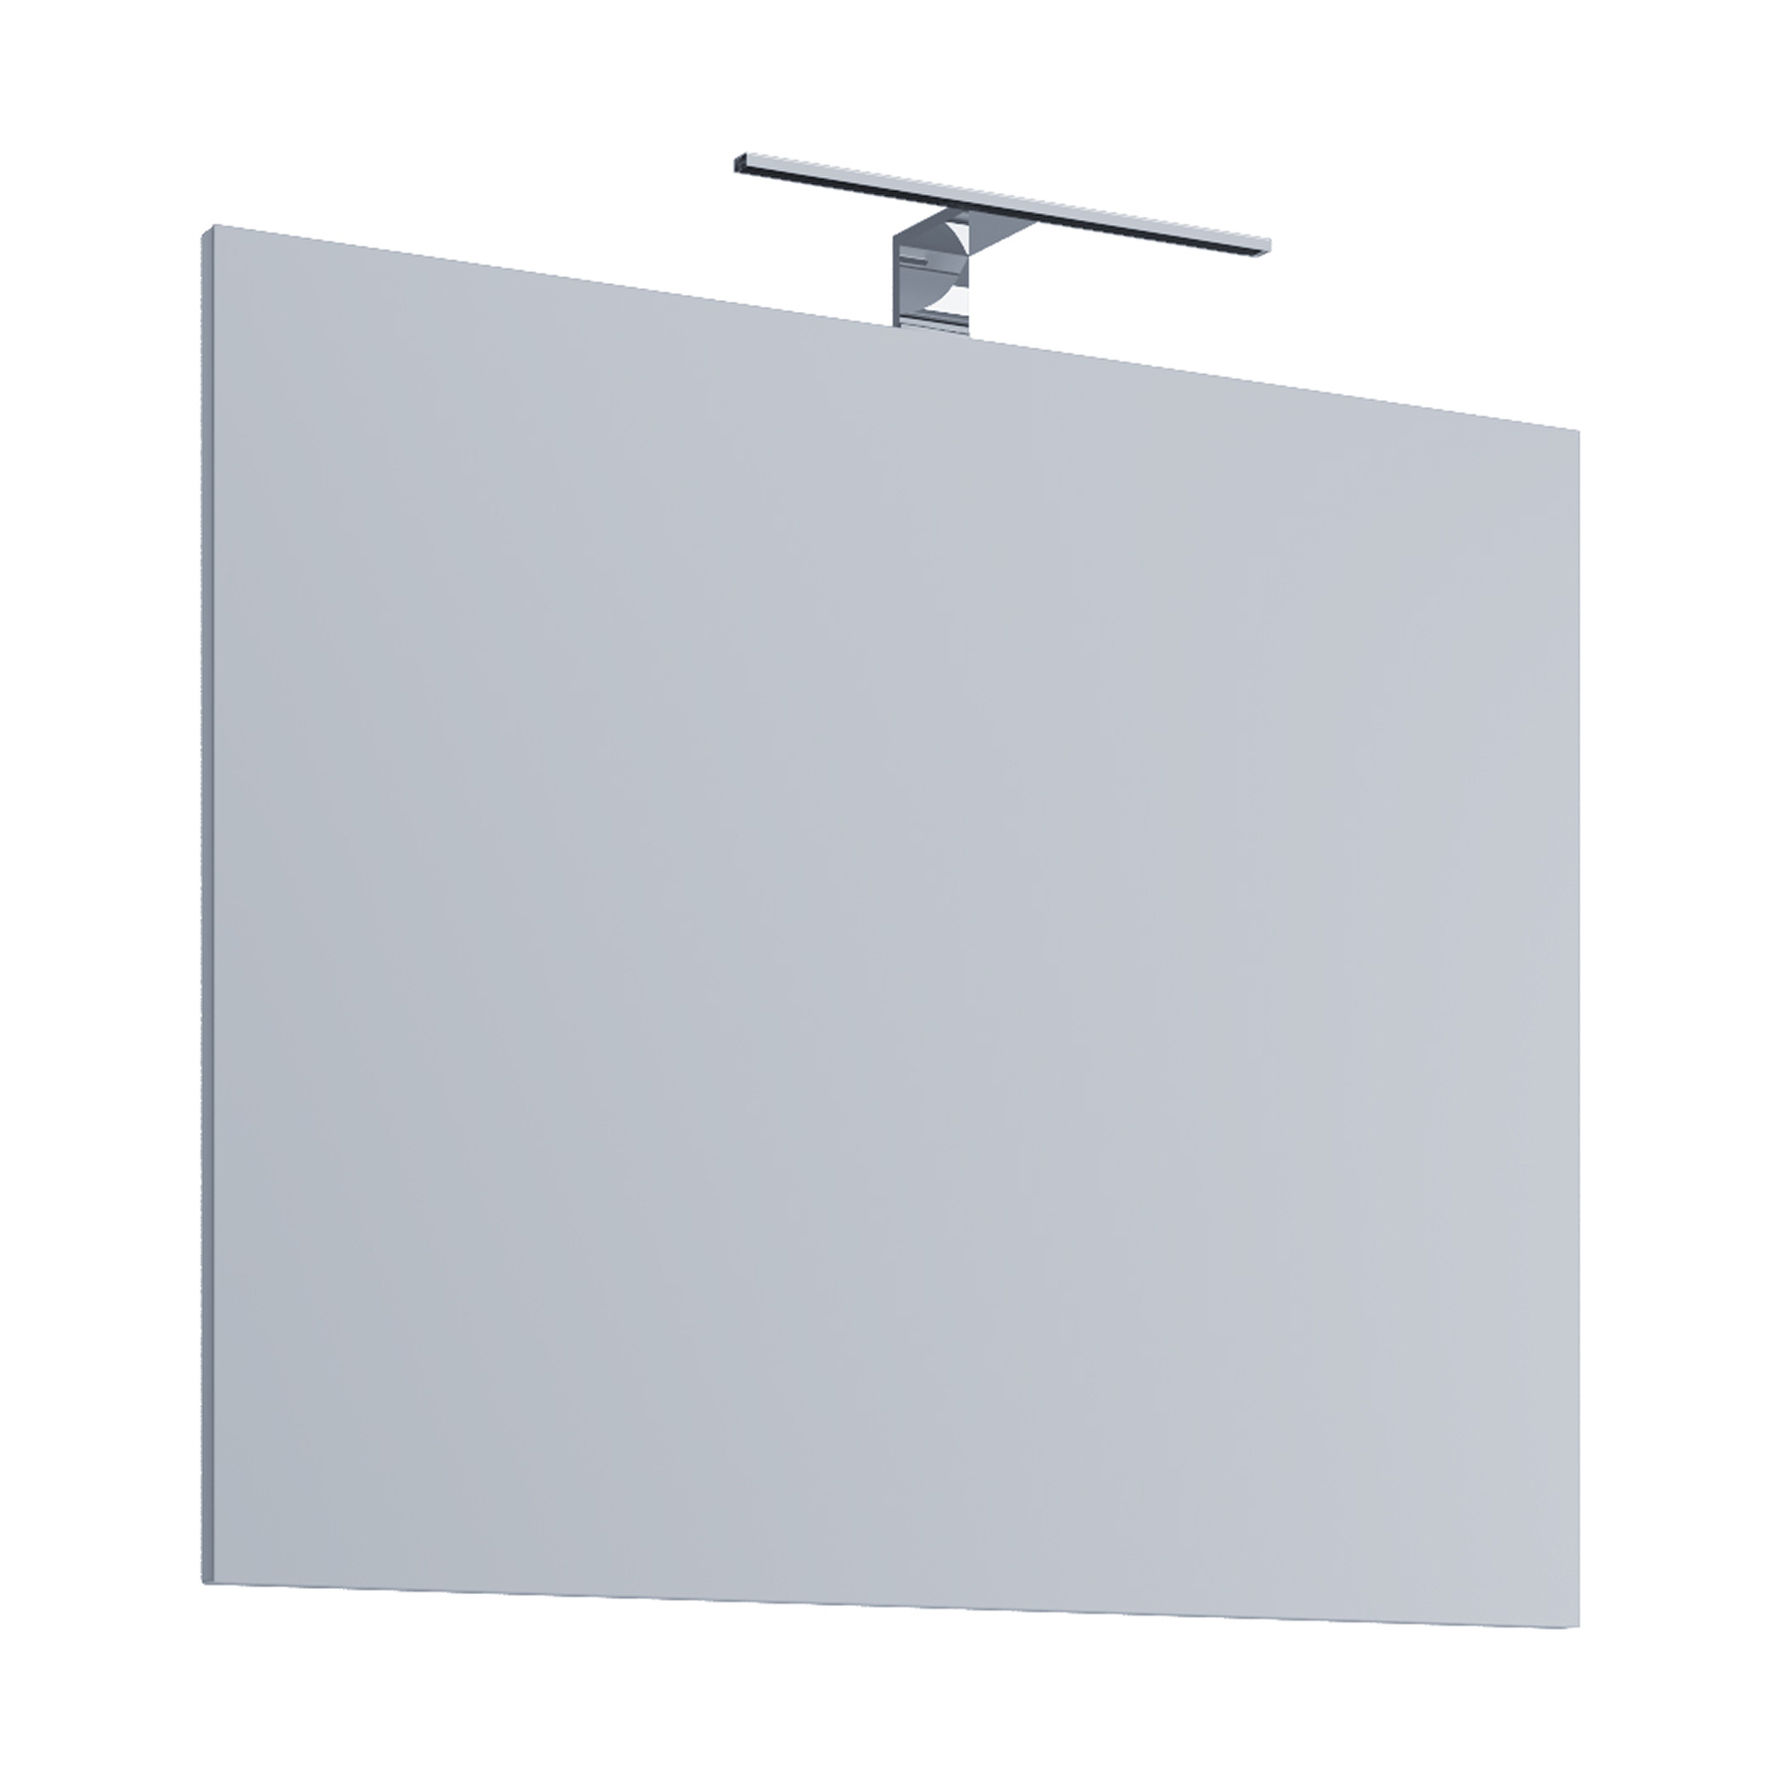 VCM Badspiegel Wandspiegel Badinos 40 x 60 cm Ausführung: Mit LED- Beleuchtung | Weltbild.de